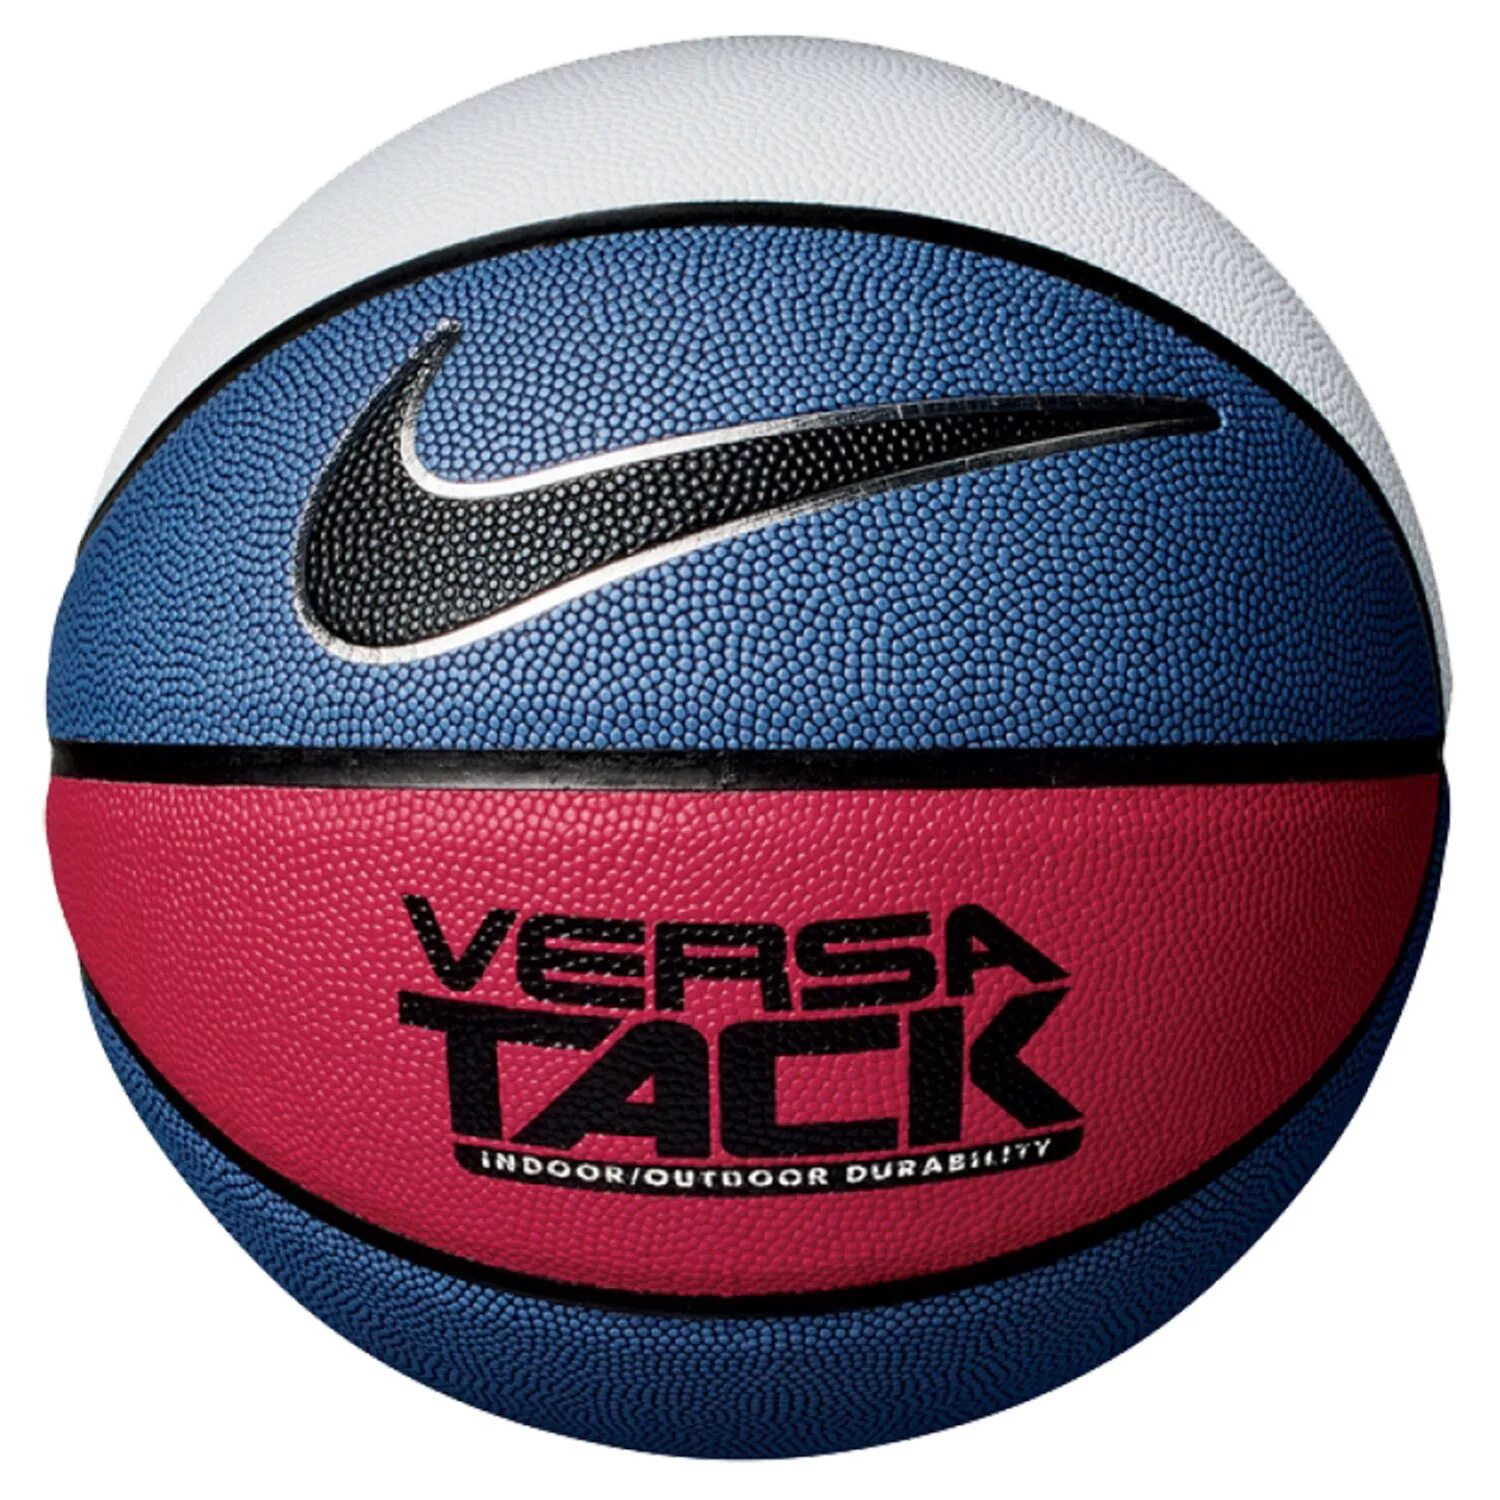 Спортивные магазины баскетбольные мячи. Баскетбольный мяч найк Versa Tack. Versa Tack баскетбольный мяч Nike 8p. Баскетбольный мяч Nike dominate. Баскетбольный мяч Nike 7.